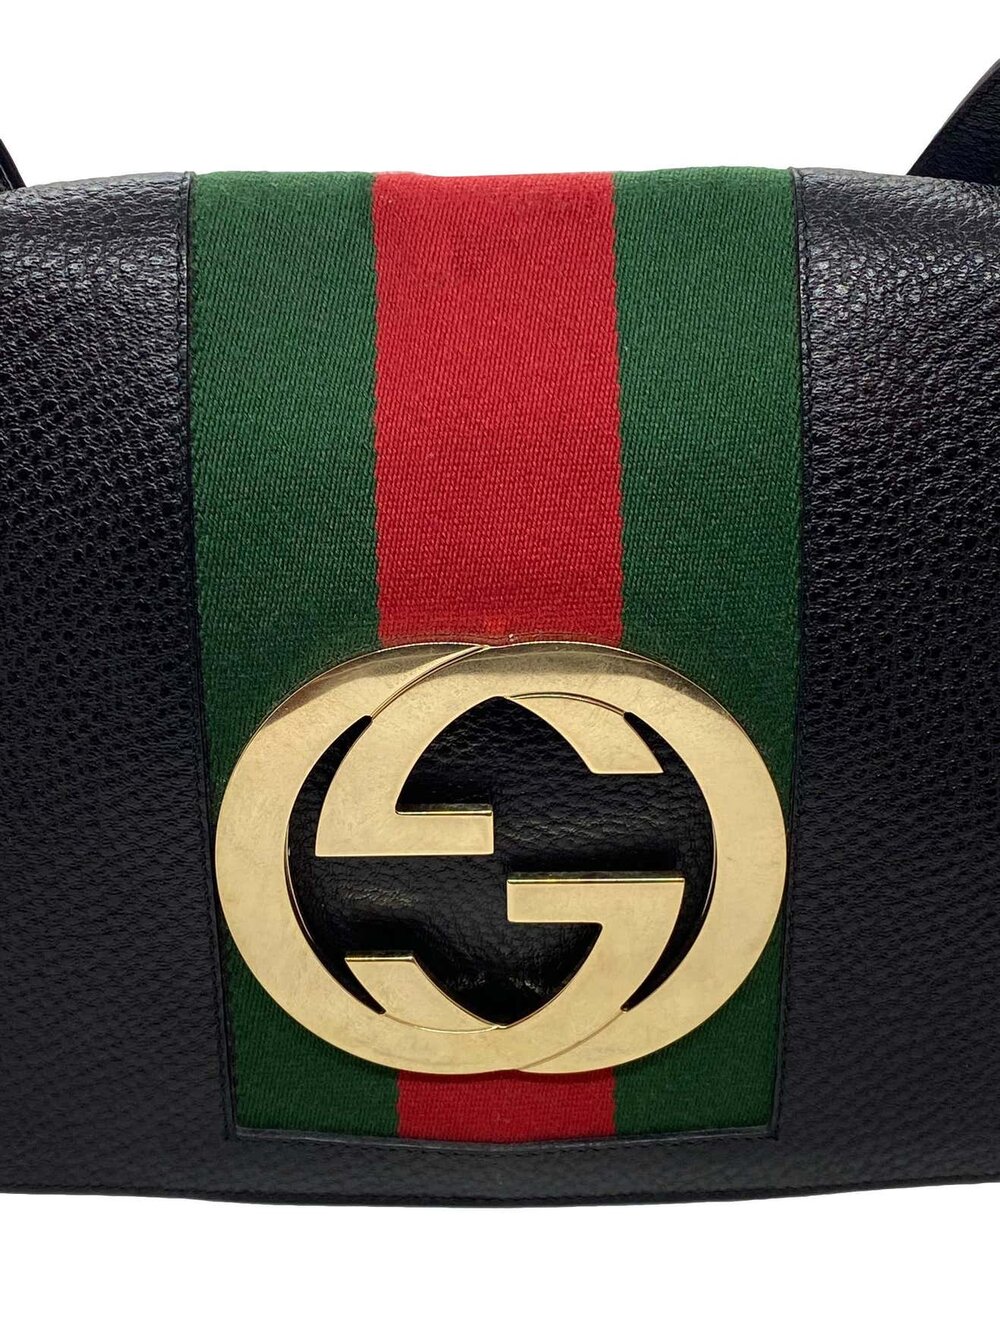 Gucci Monogram Speedy Top Handle Bag